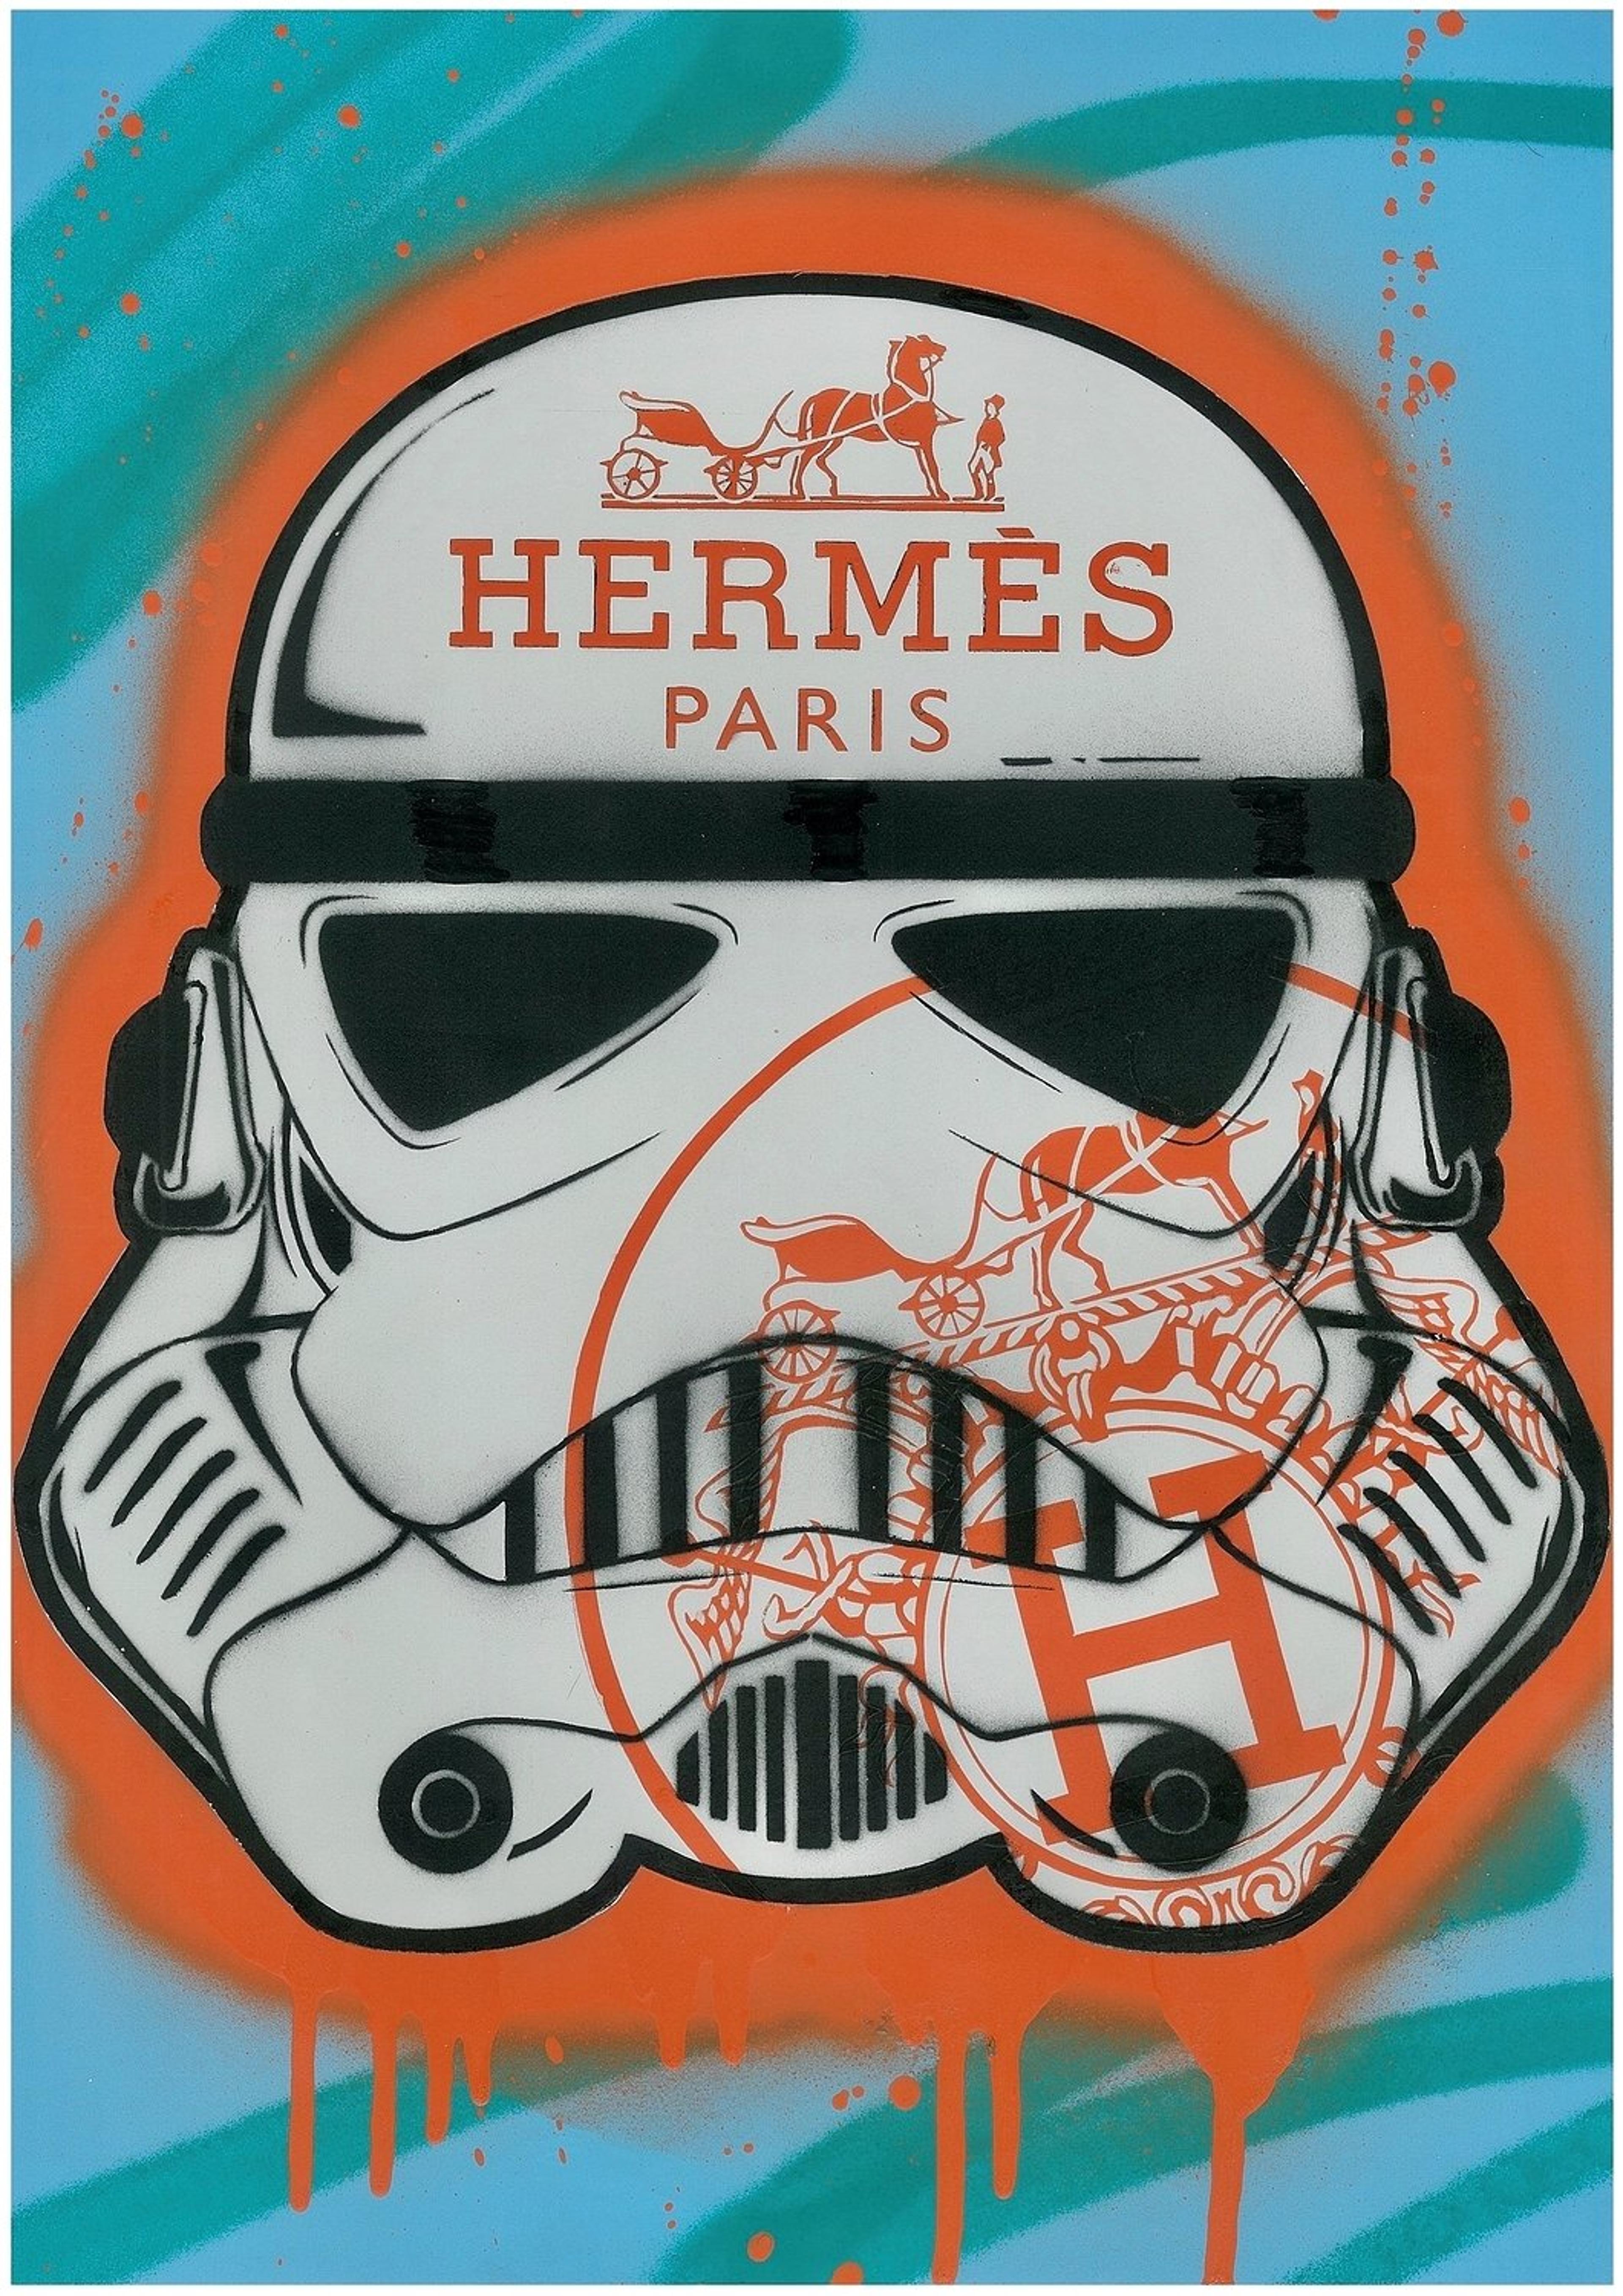 Imperial Hermes